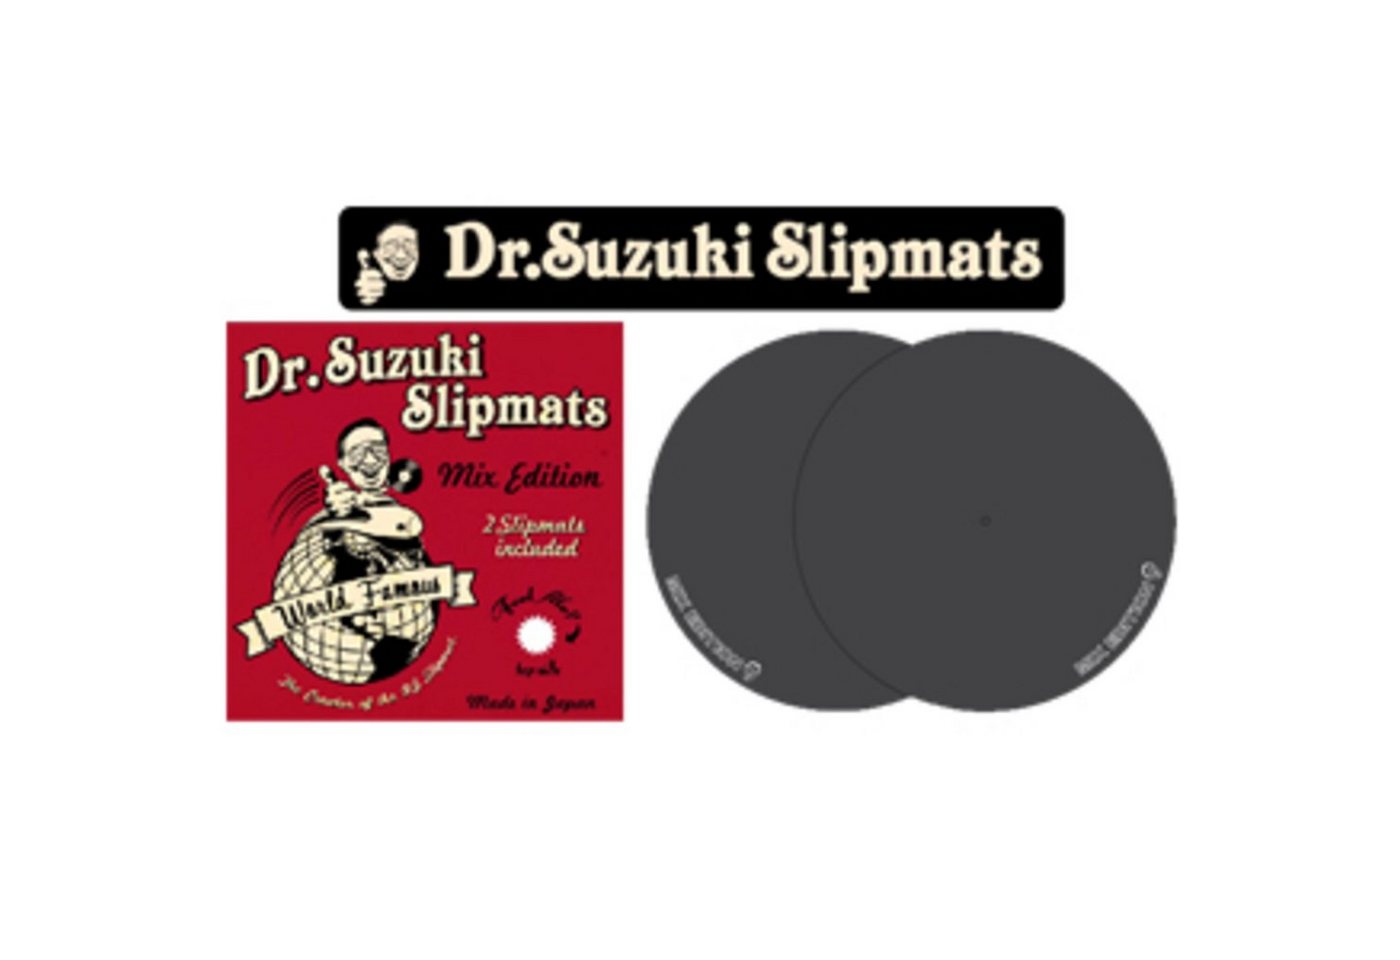 Dr. Suzuki Plattenspieler-Schutzhülle, 12 Mix Edition Slipmats black (paar) - Slipmat für Plattenspieler" von Dr. Suzuki